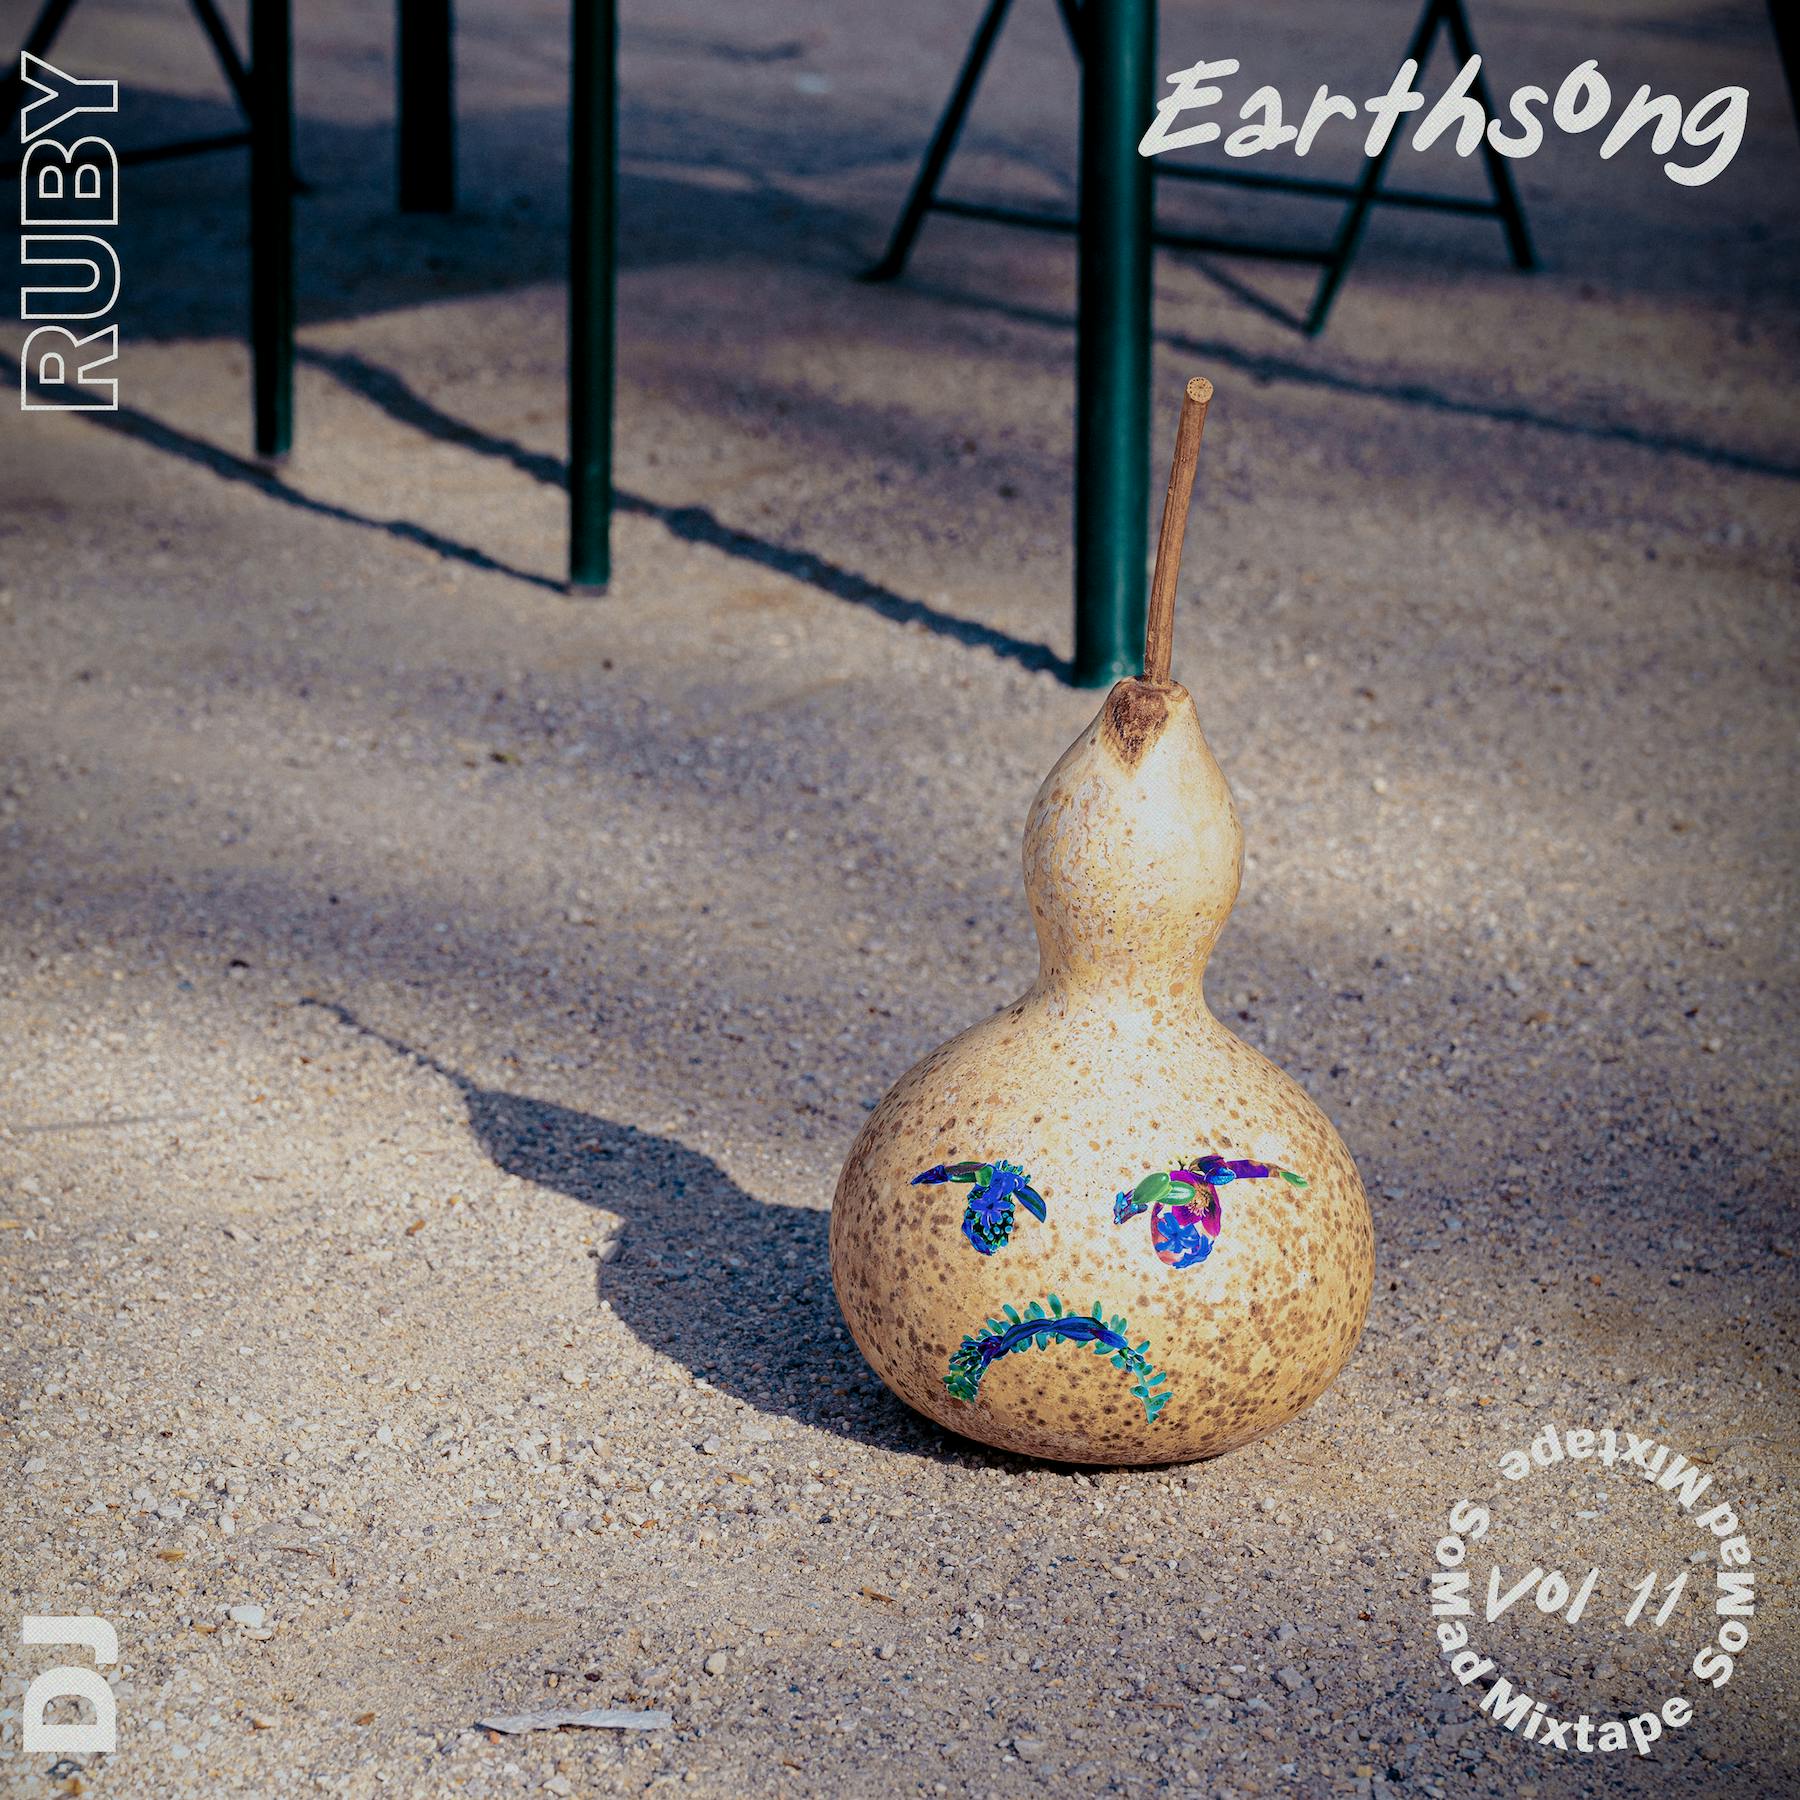 Mixtape Vol 11: Earthsong